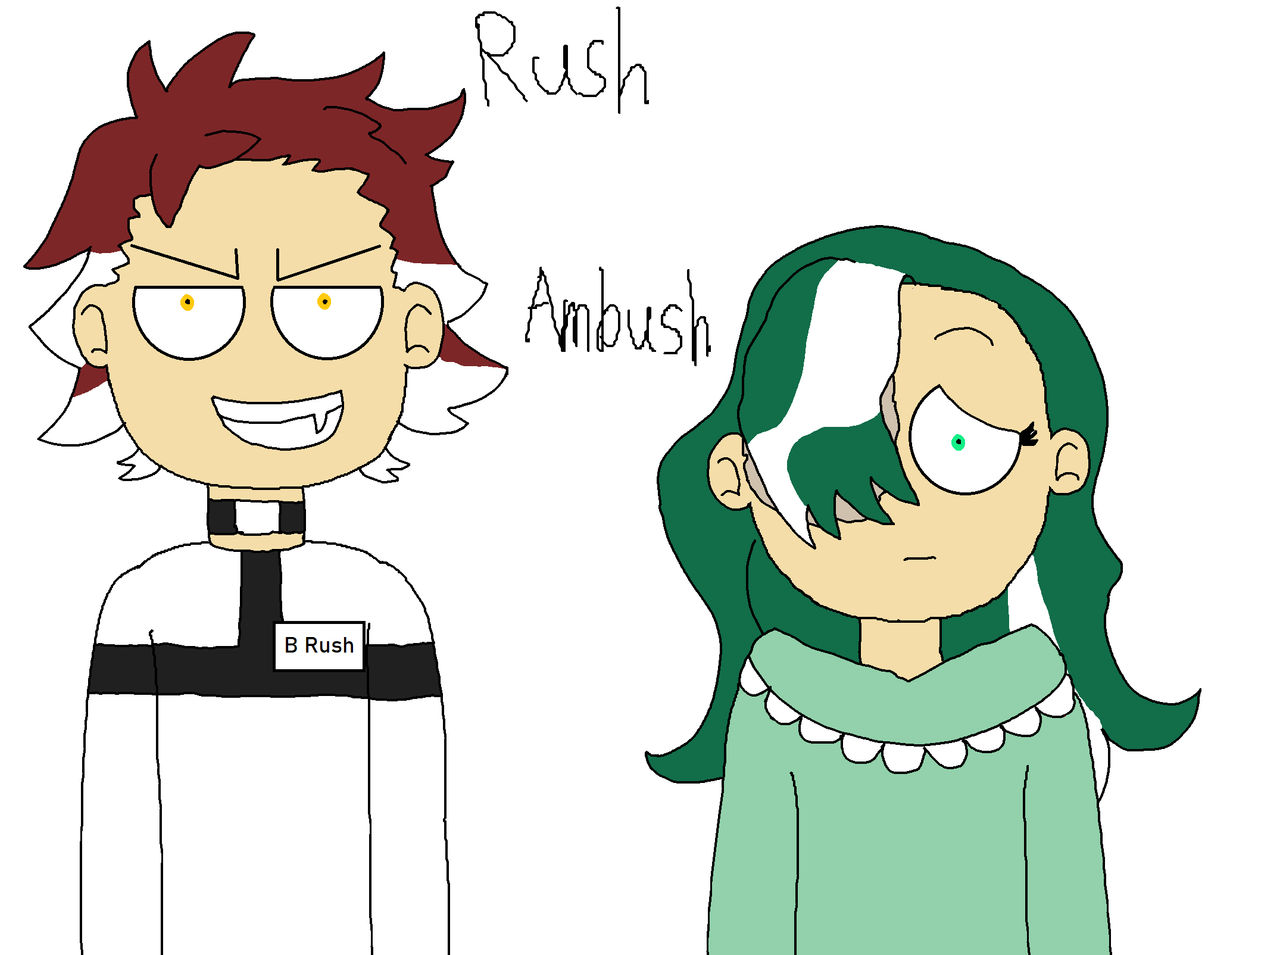 Rush and Ambush